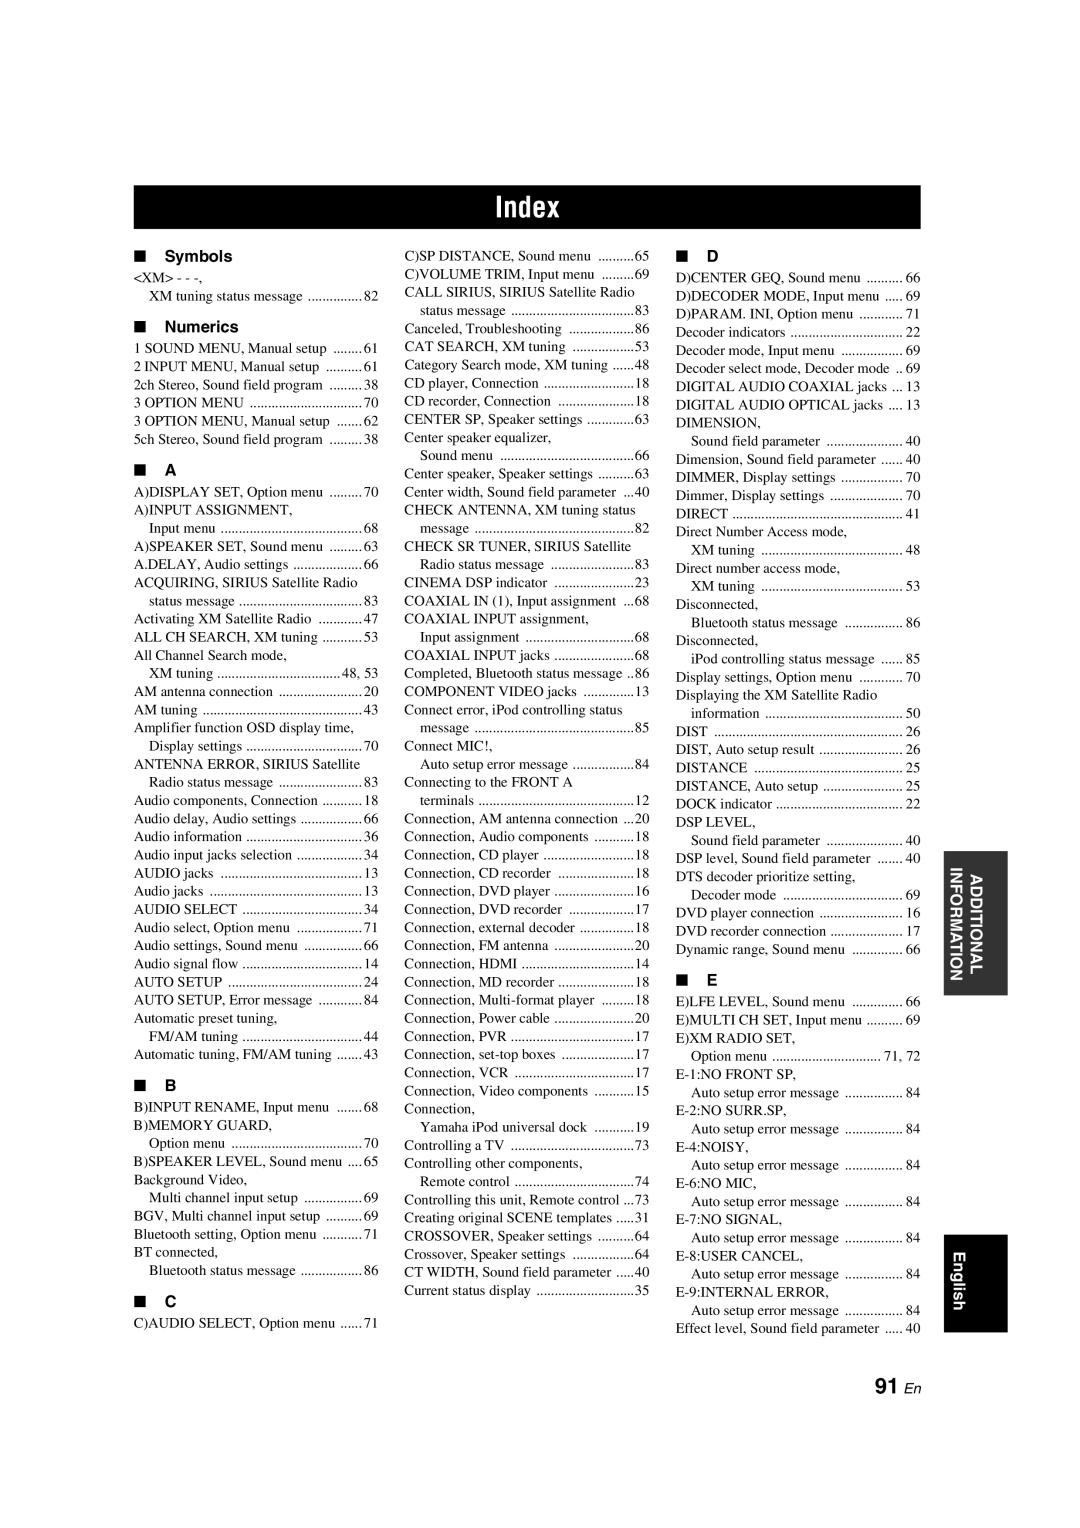 Yamaha RX-V463 owner manual Index, 91 En 